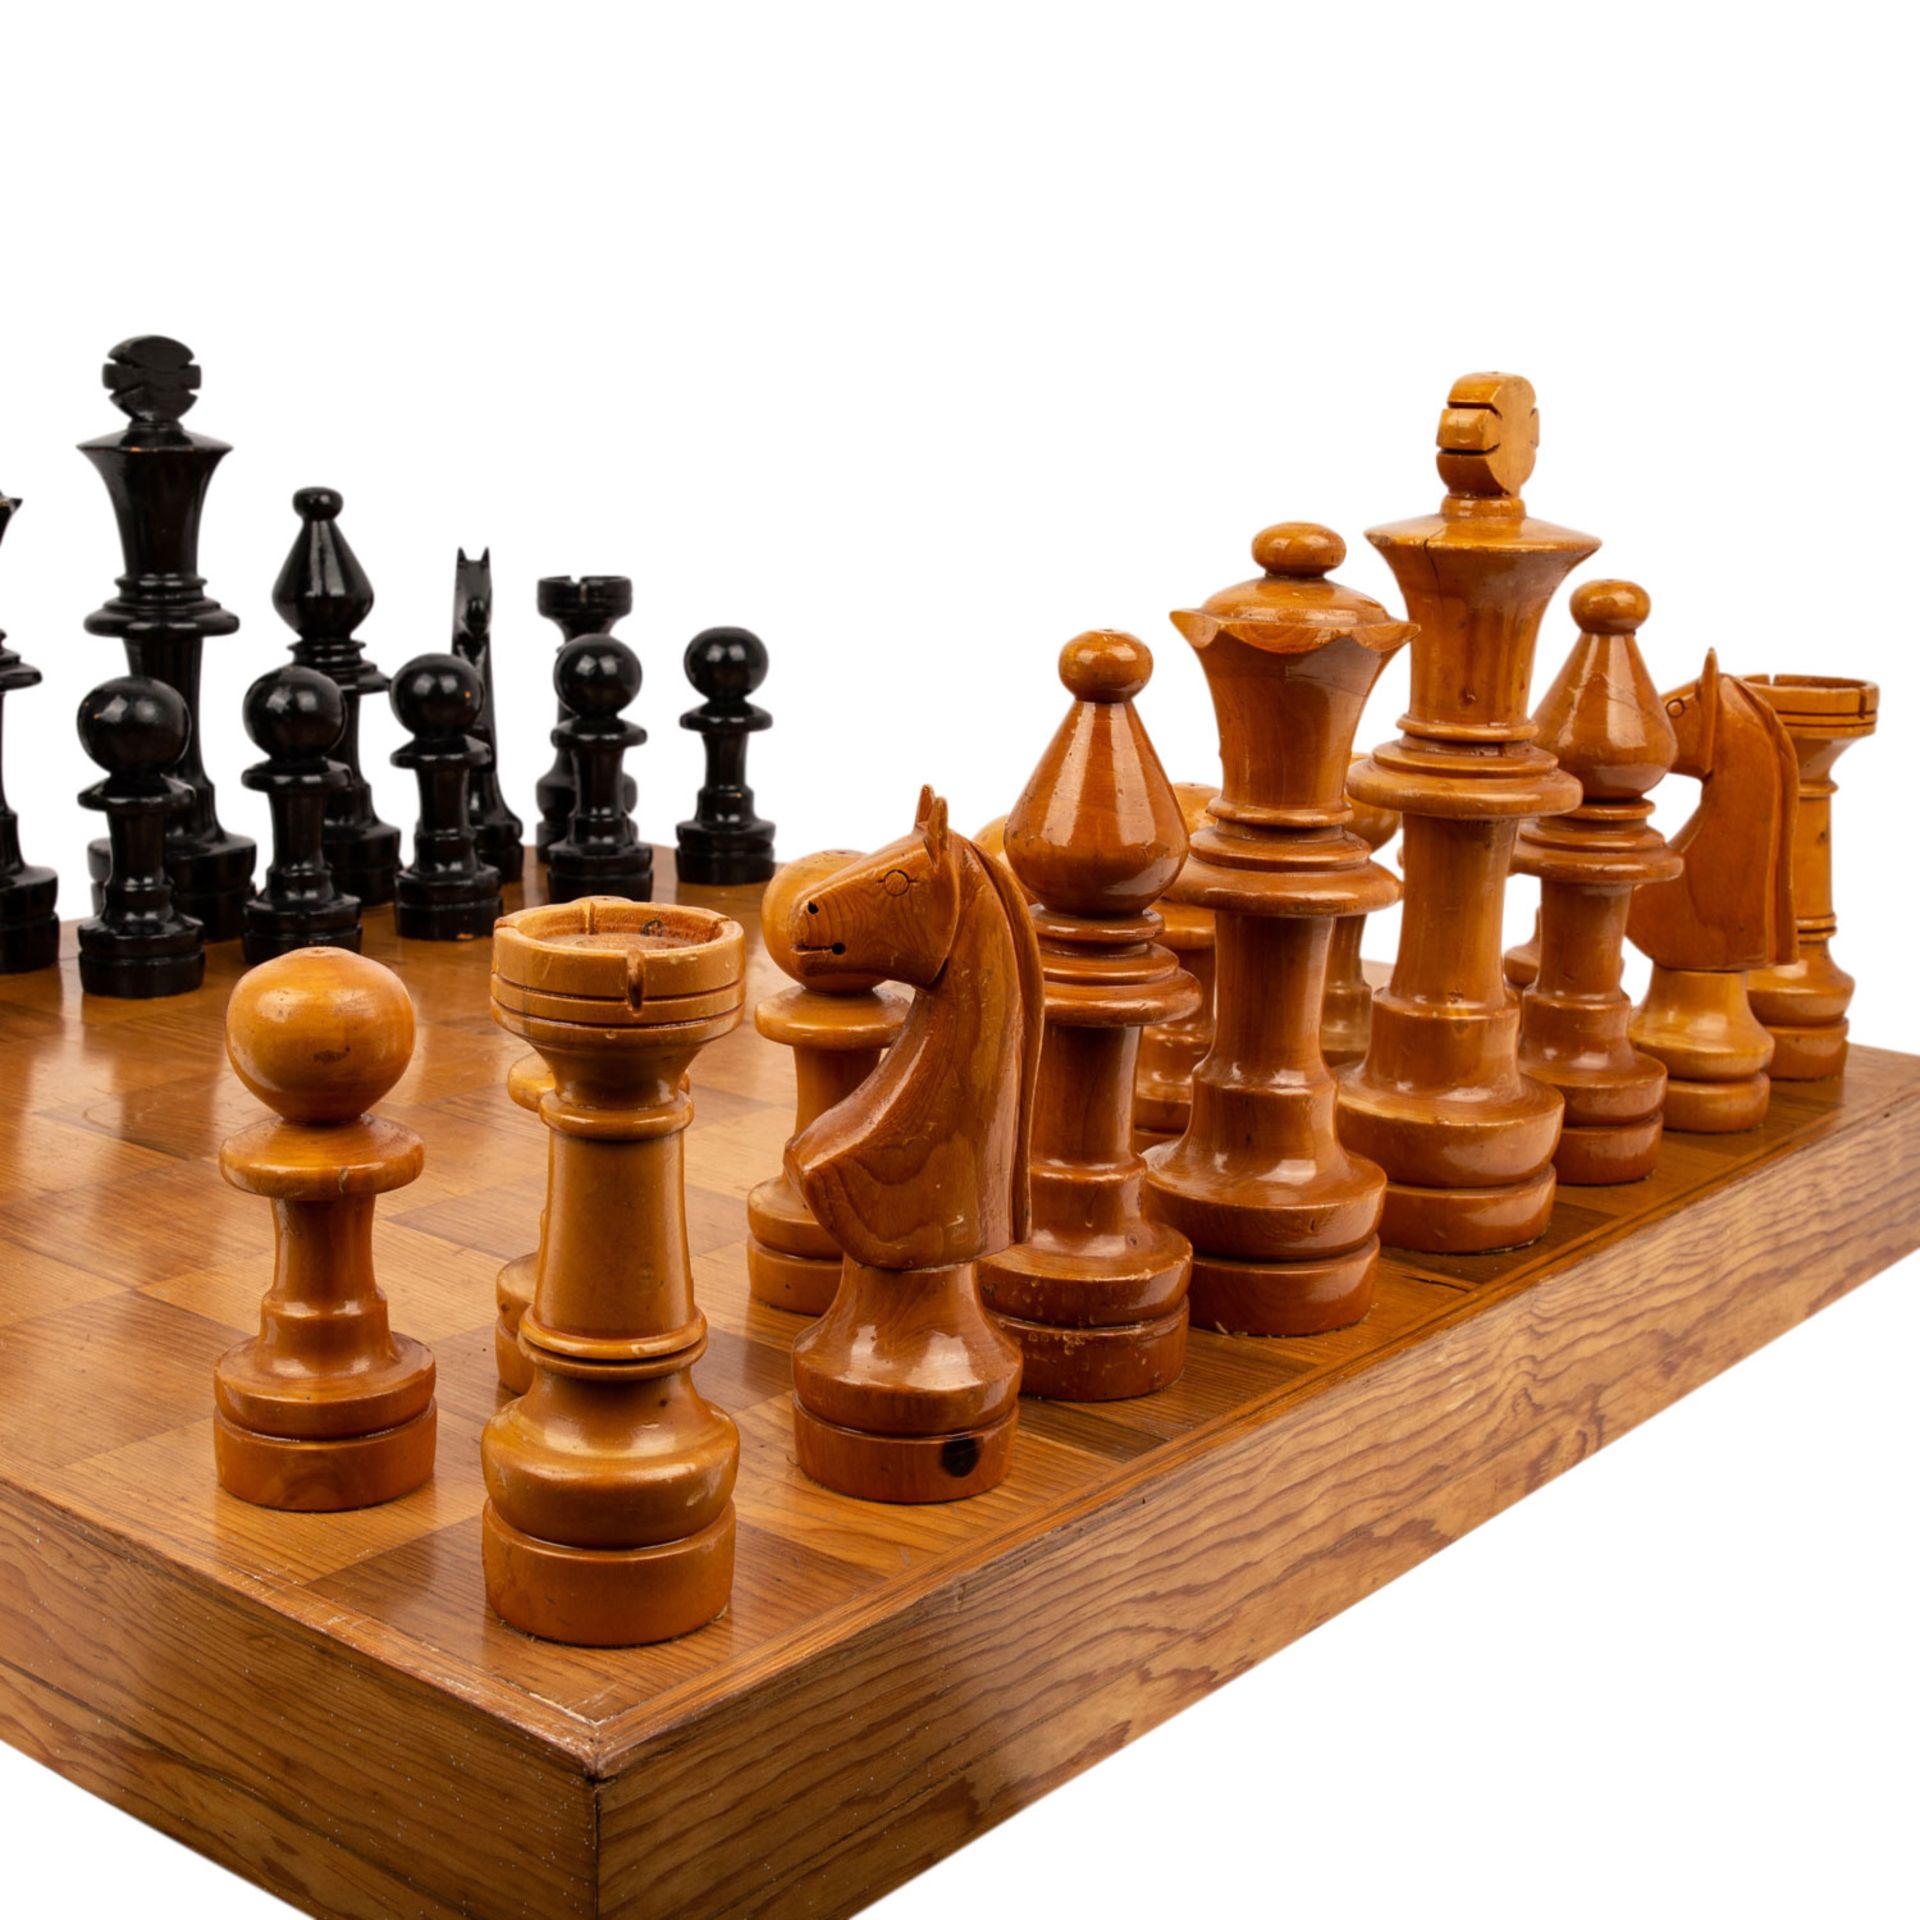 GROßES SCHACHSPIEL Rechteckkasten, darin kompletter Satz eines Schachspiels, die Figuren in Holz - Bild 3 aus 5